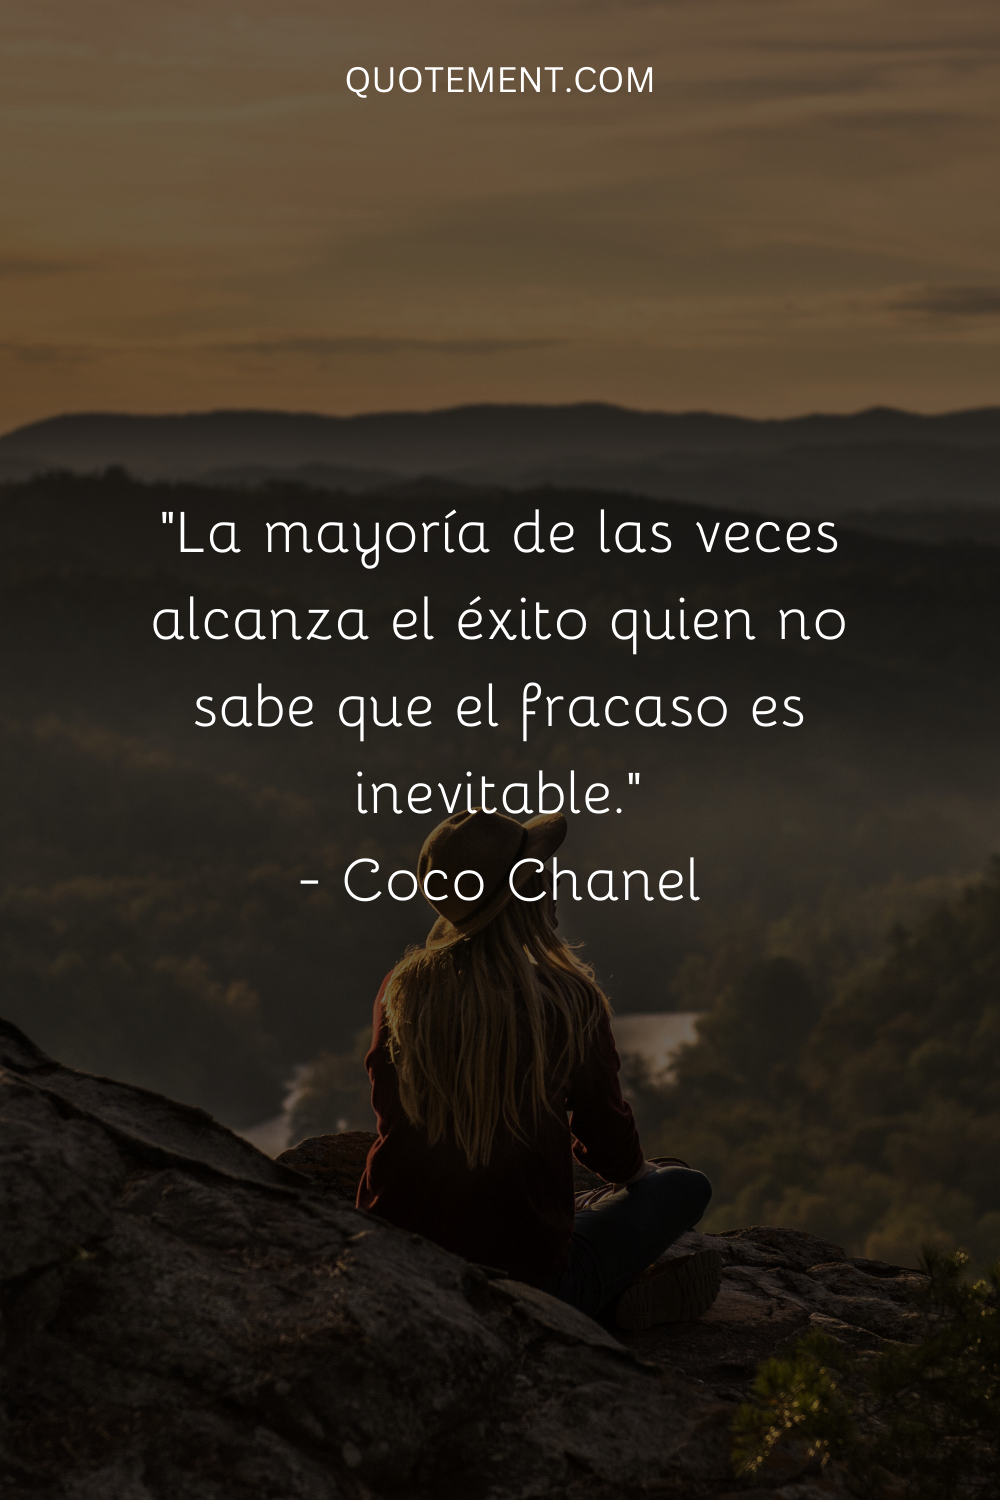 La mayoría de las veces alcanza el éxito quien no sabe que el fracaso es inevitable. - Coco Chanel